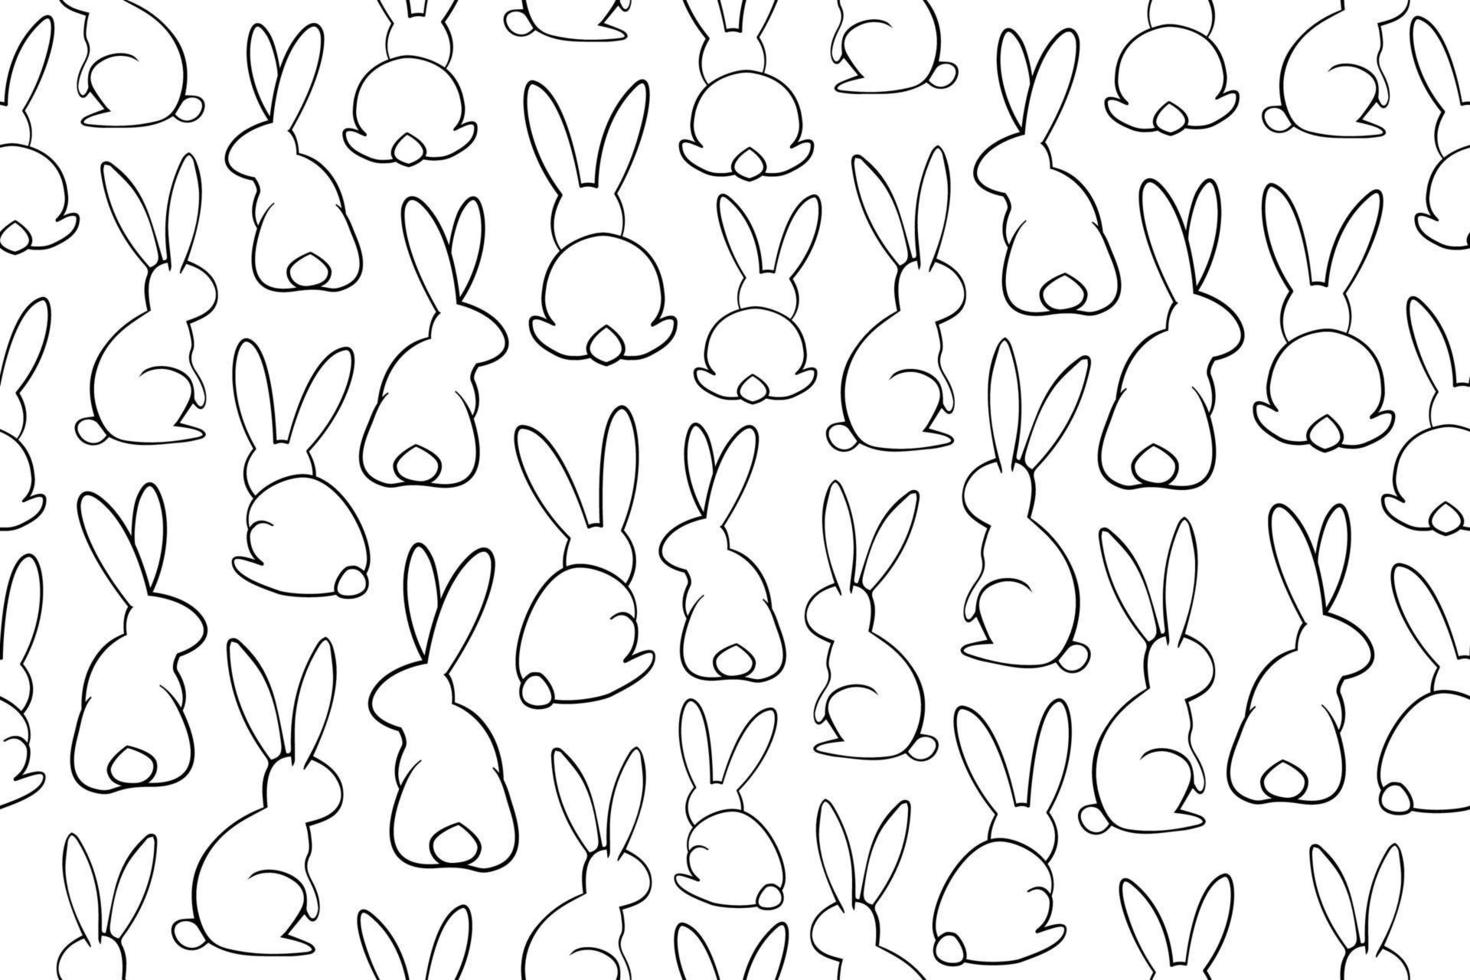 modello di coniglietto senza soluzione di continuità. conigli selvatici in bianco e nero in posizione diversa. illustrazioni di contorno, conigli di arte di linea vettoriale con linea sottile nera.